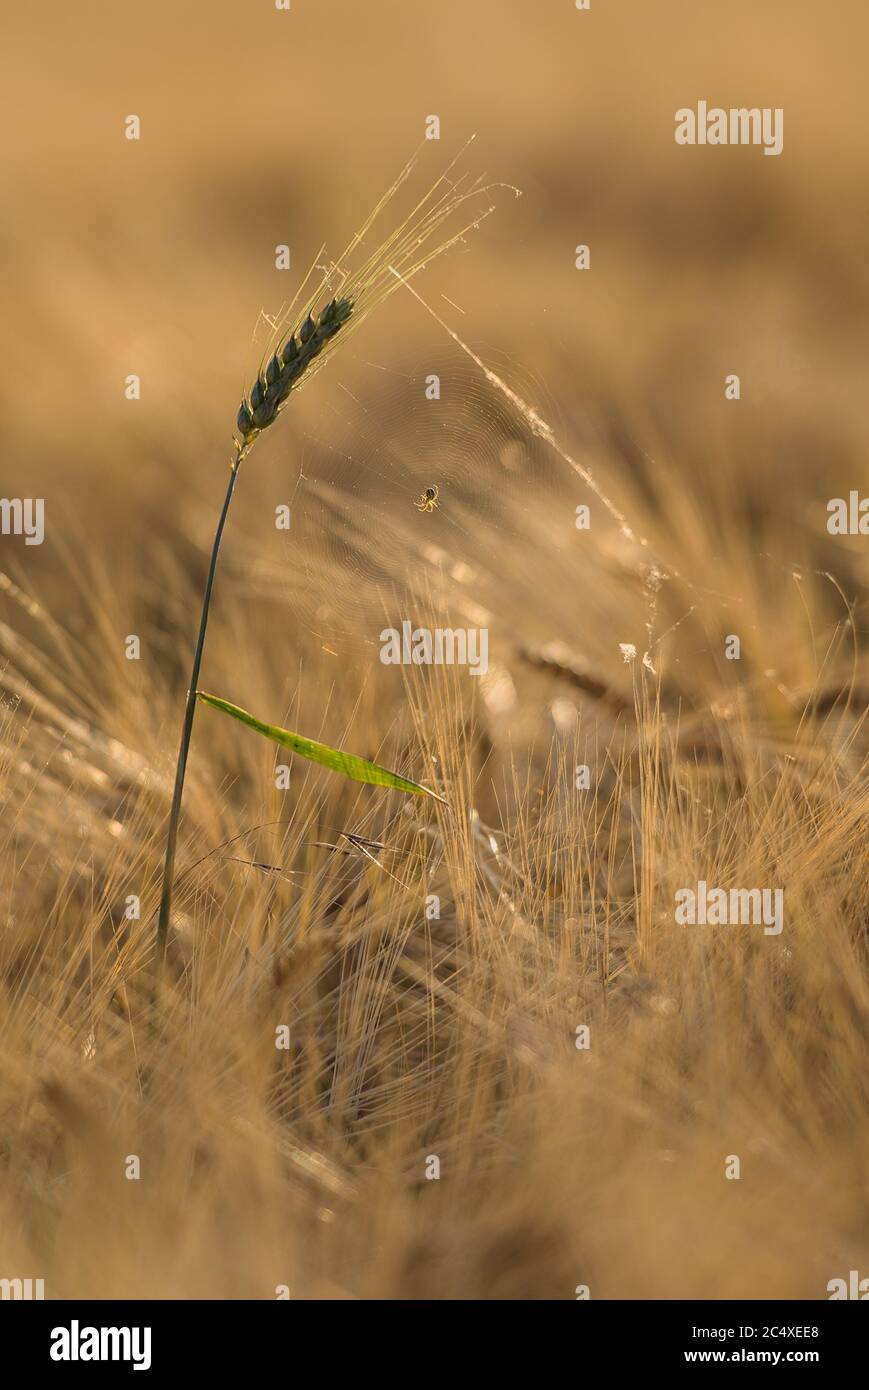 Spinnennetz auf einer grünen Ähre im Getreidefeld Foto Stock